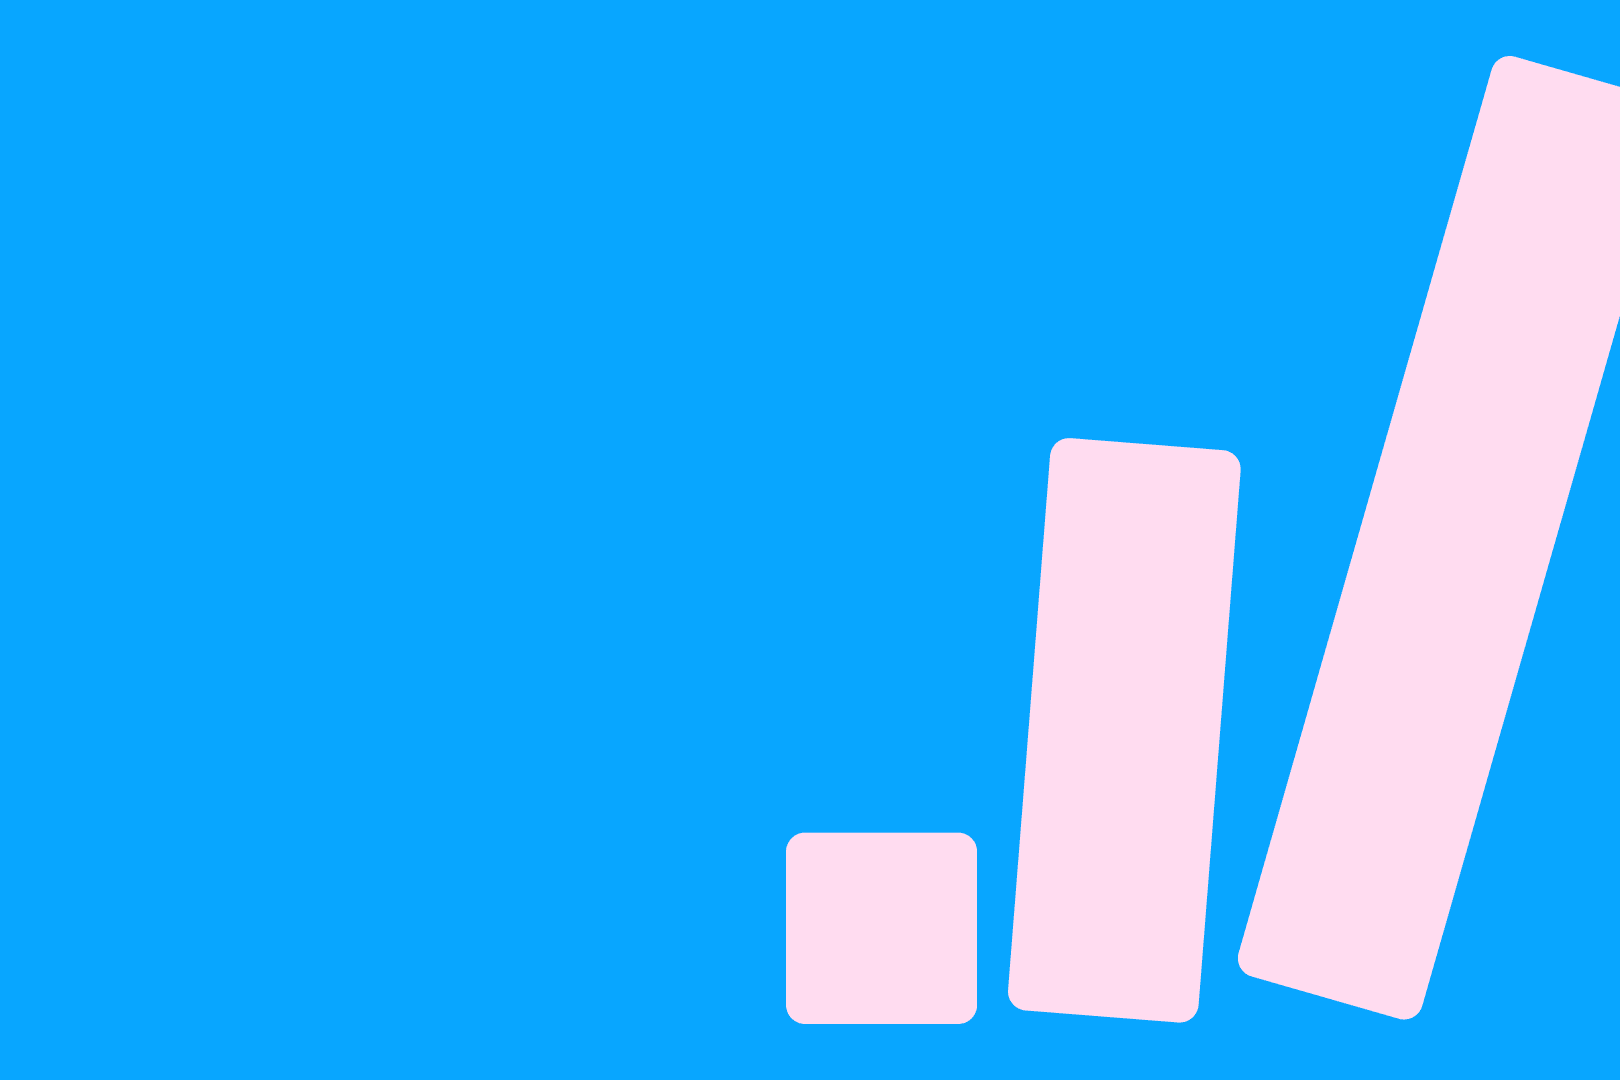 sinisellä taustalla oleva graafinen kuvio, jossa kolme eri korkuista vaaleanpunaista tolppaa vierekkäin. Yksi tolpista, reunimmainen on kaatumaisillaan